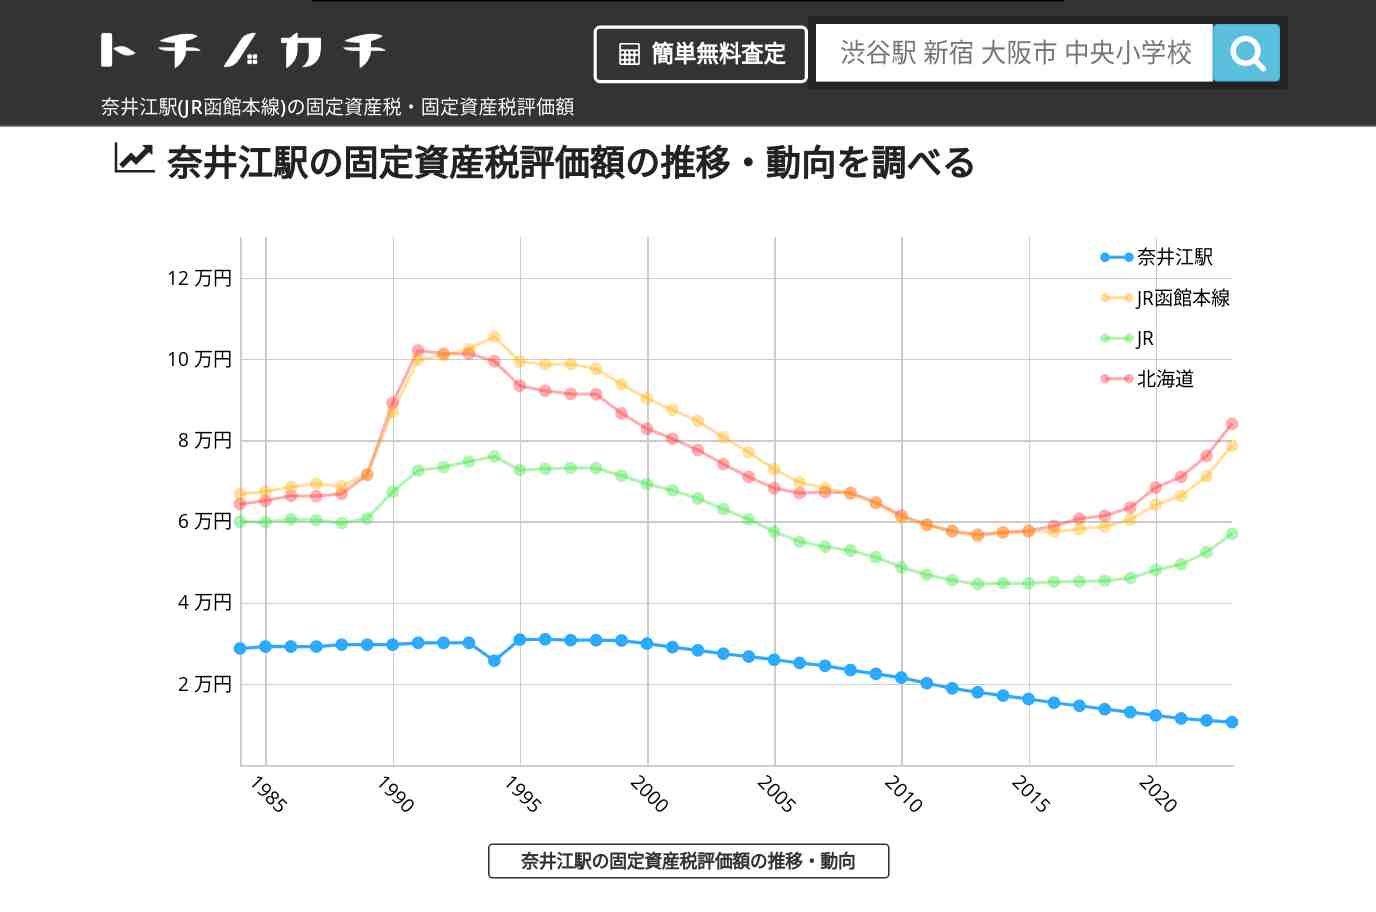 奈井江駅(JR函館本線)の固定資産税・固定資産税評価額 | トチノカチ